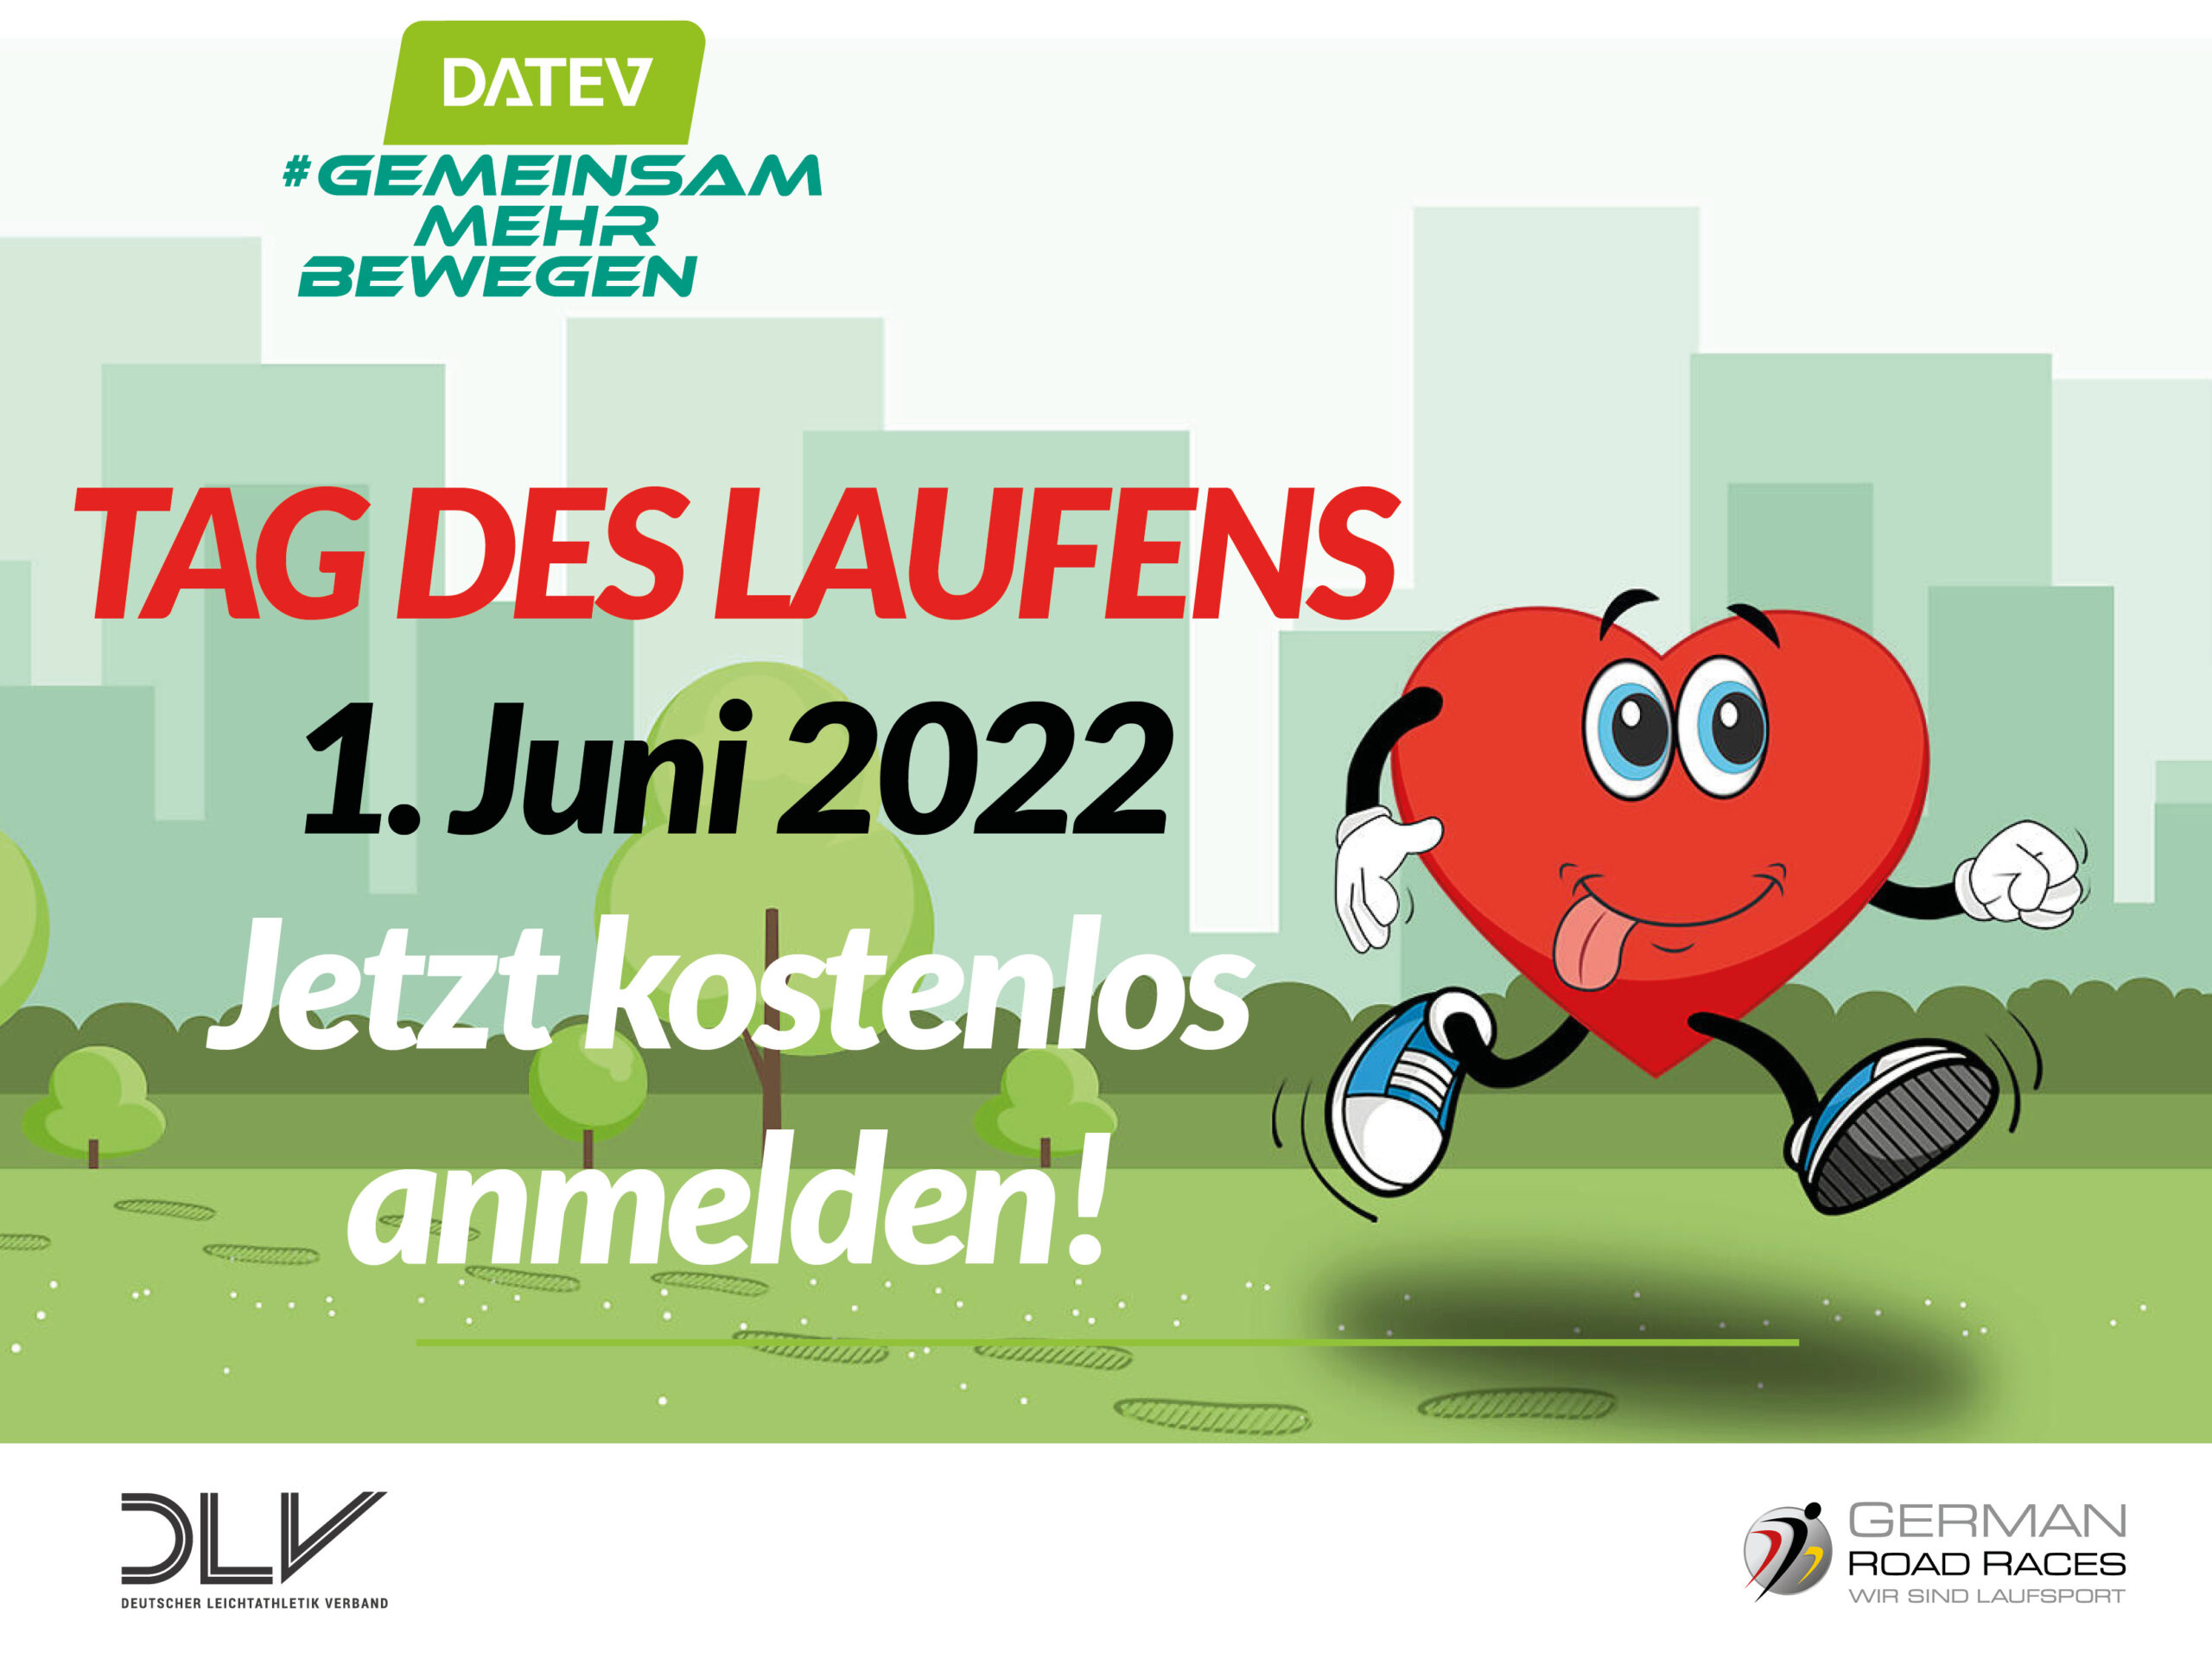 Tag des Laufens am 1. Juni 2022